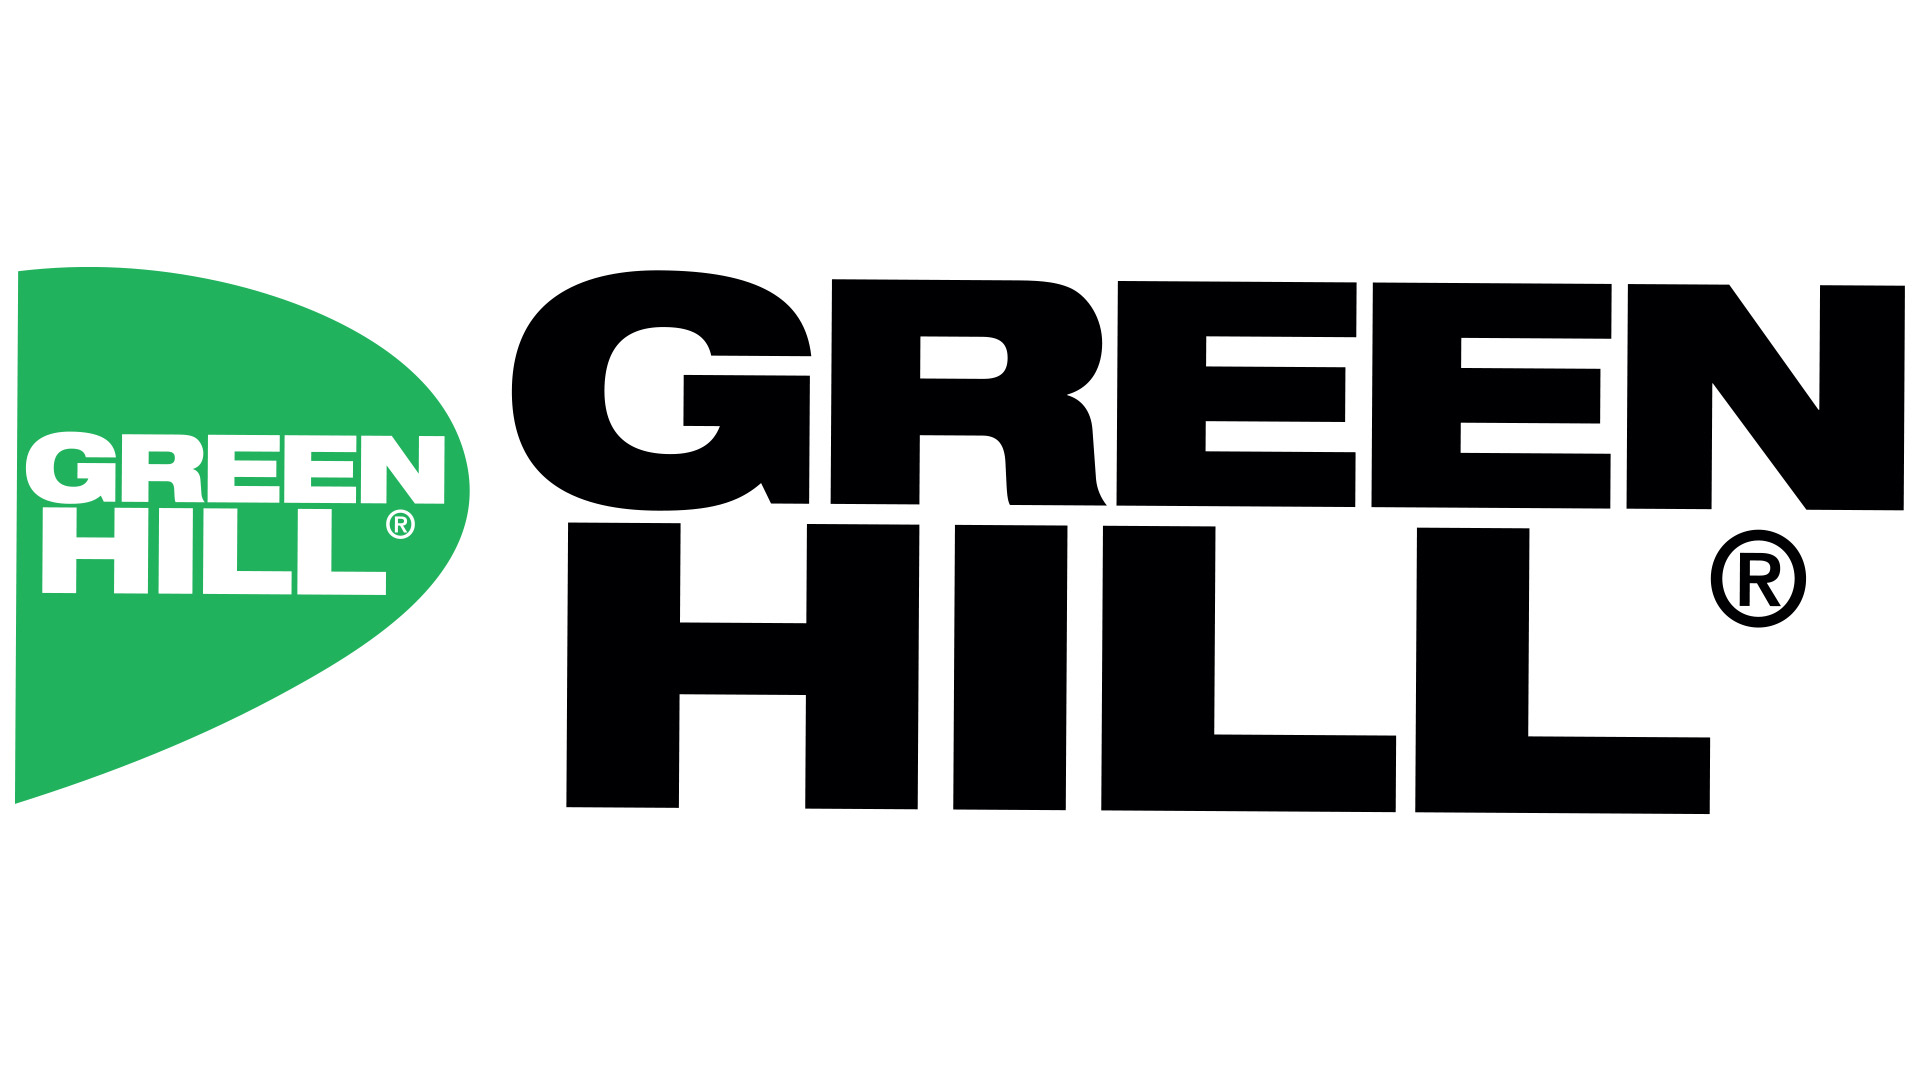 ООО "Проспорт" (Green Hill)